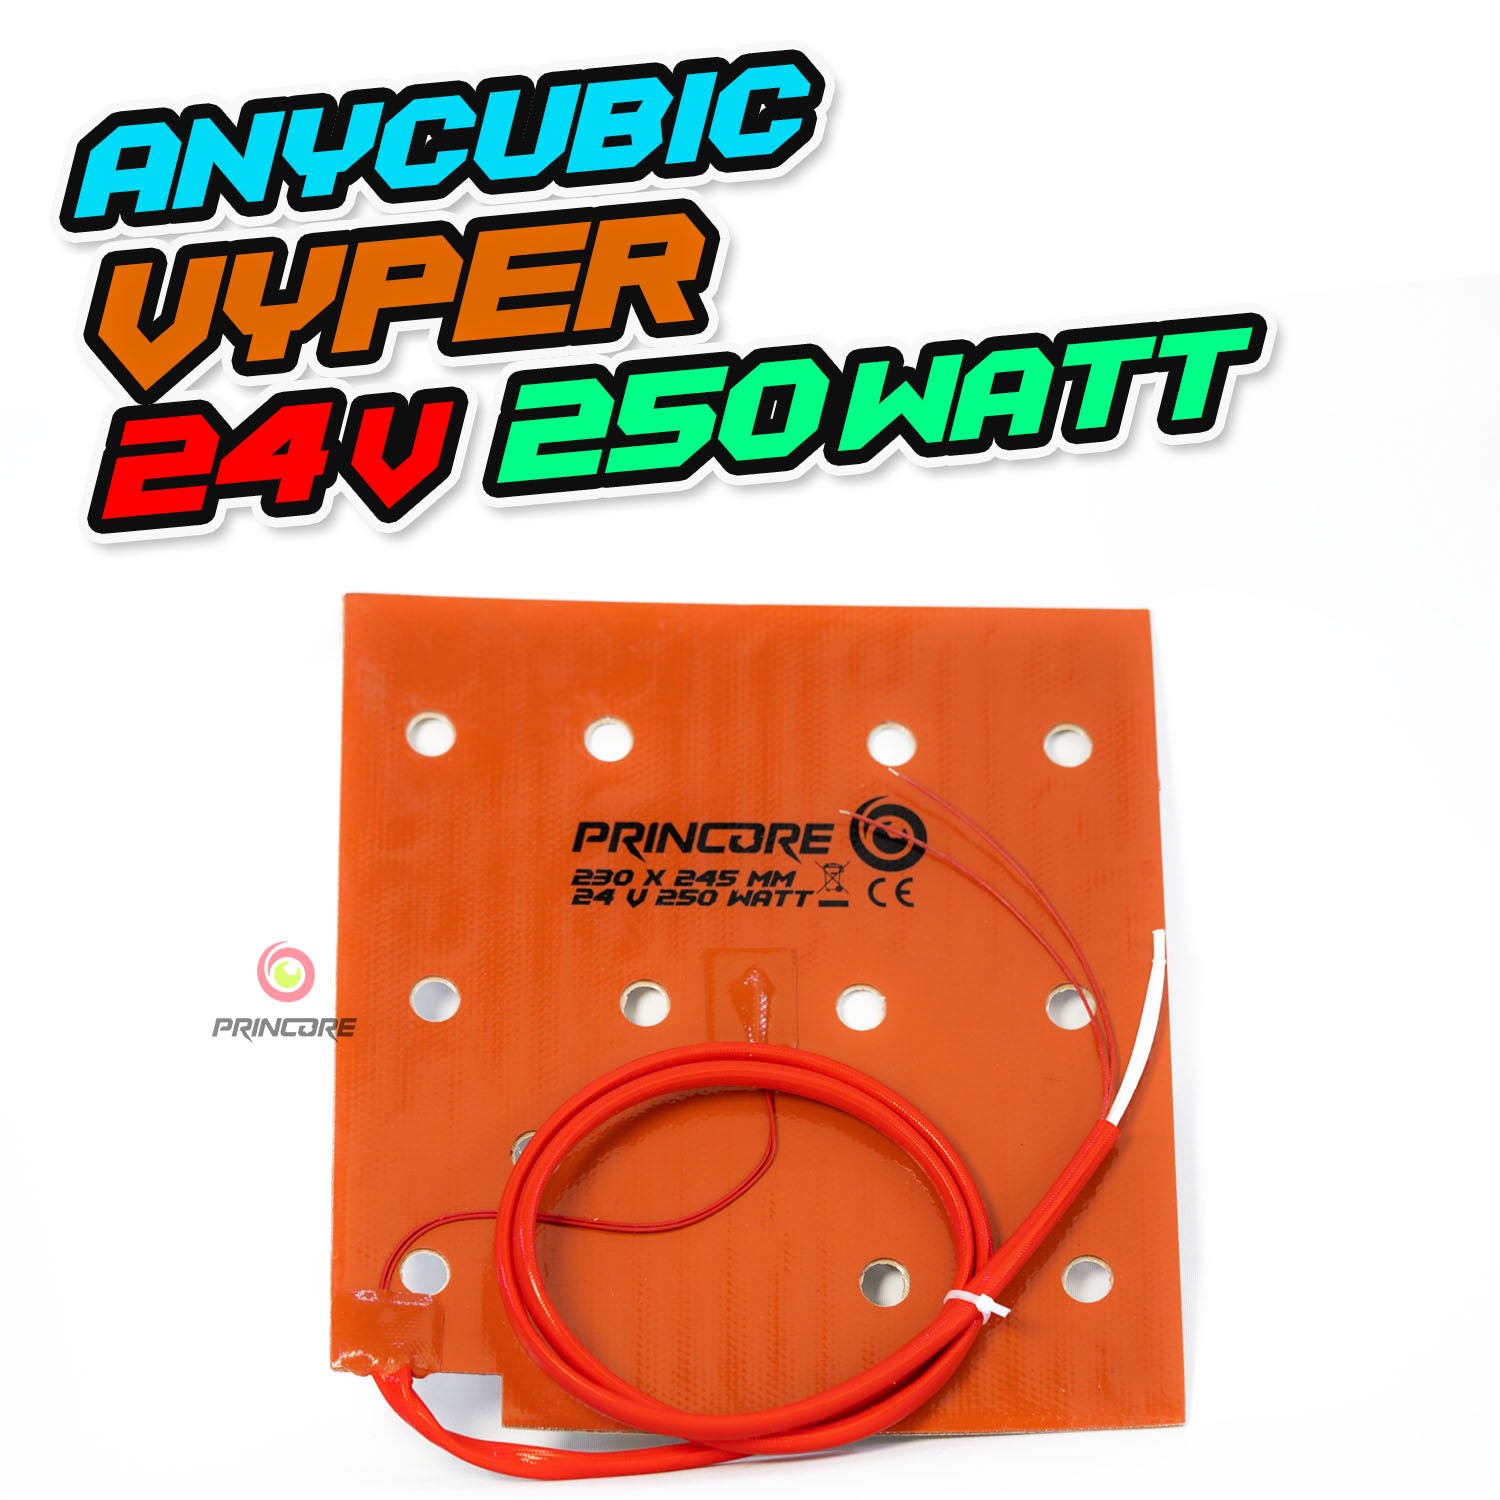 Anycubic Vyper - Silikonheizmatte 24V 250Watt - 230x245mm